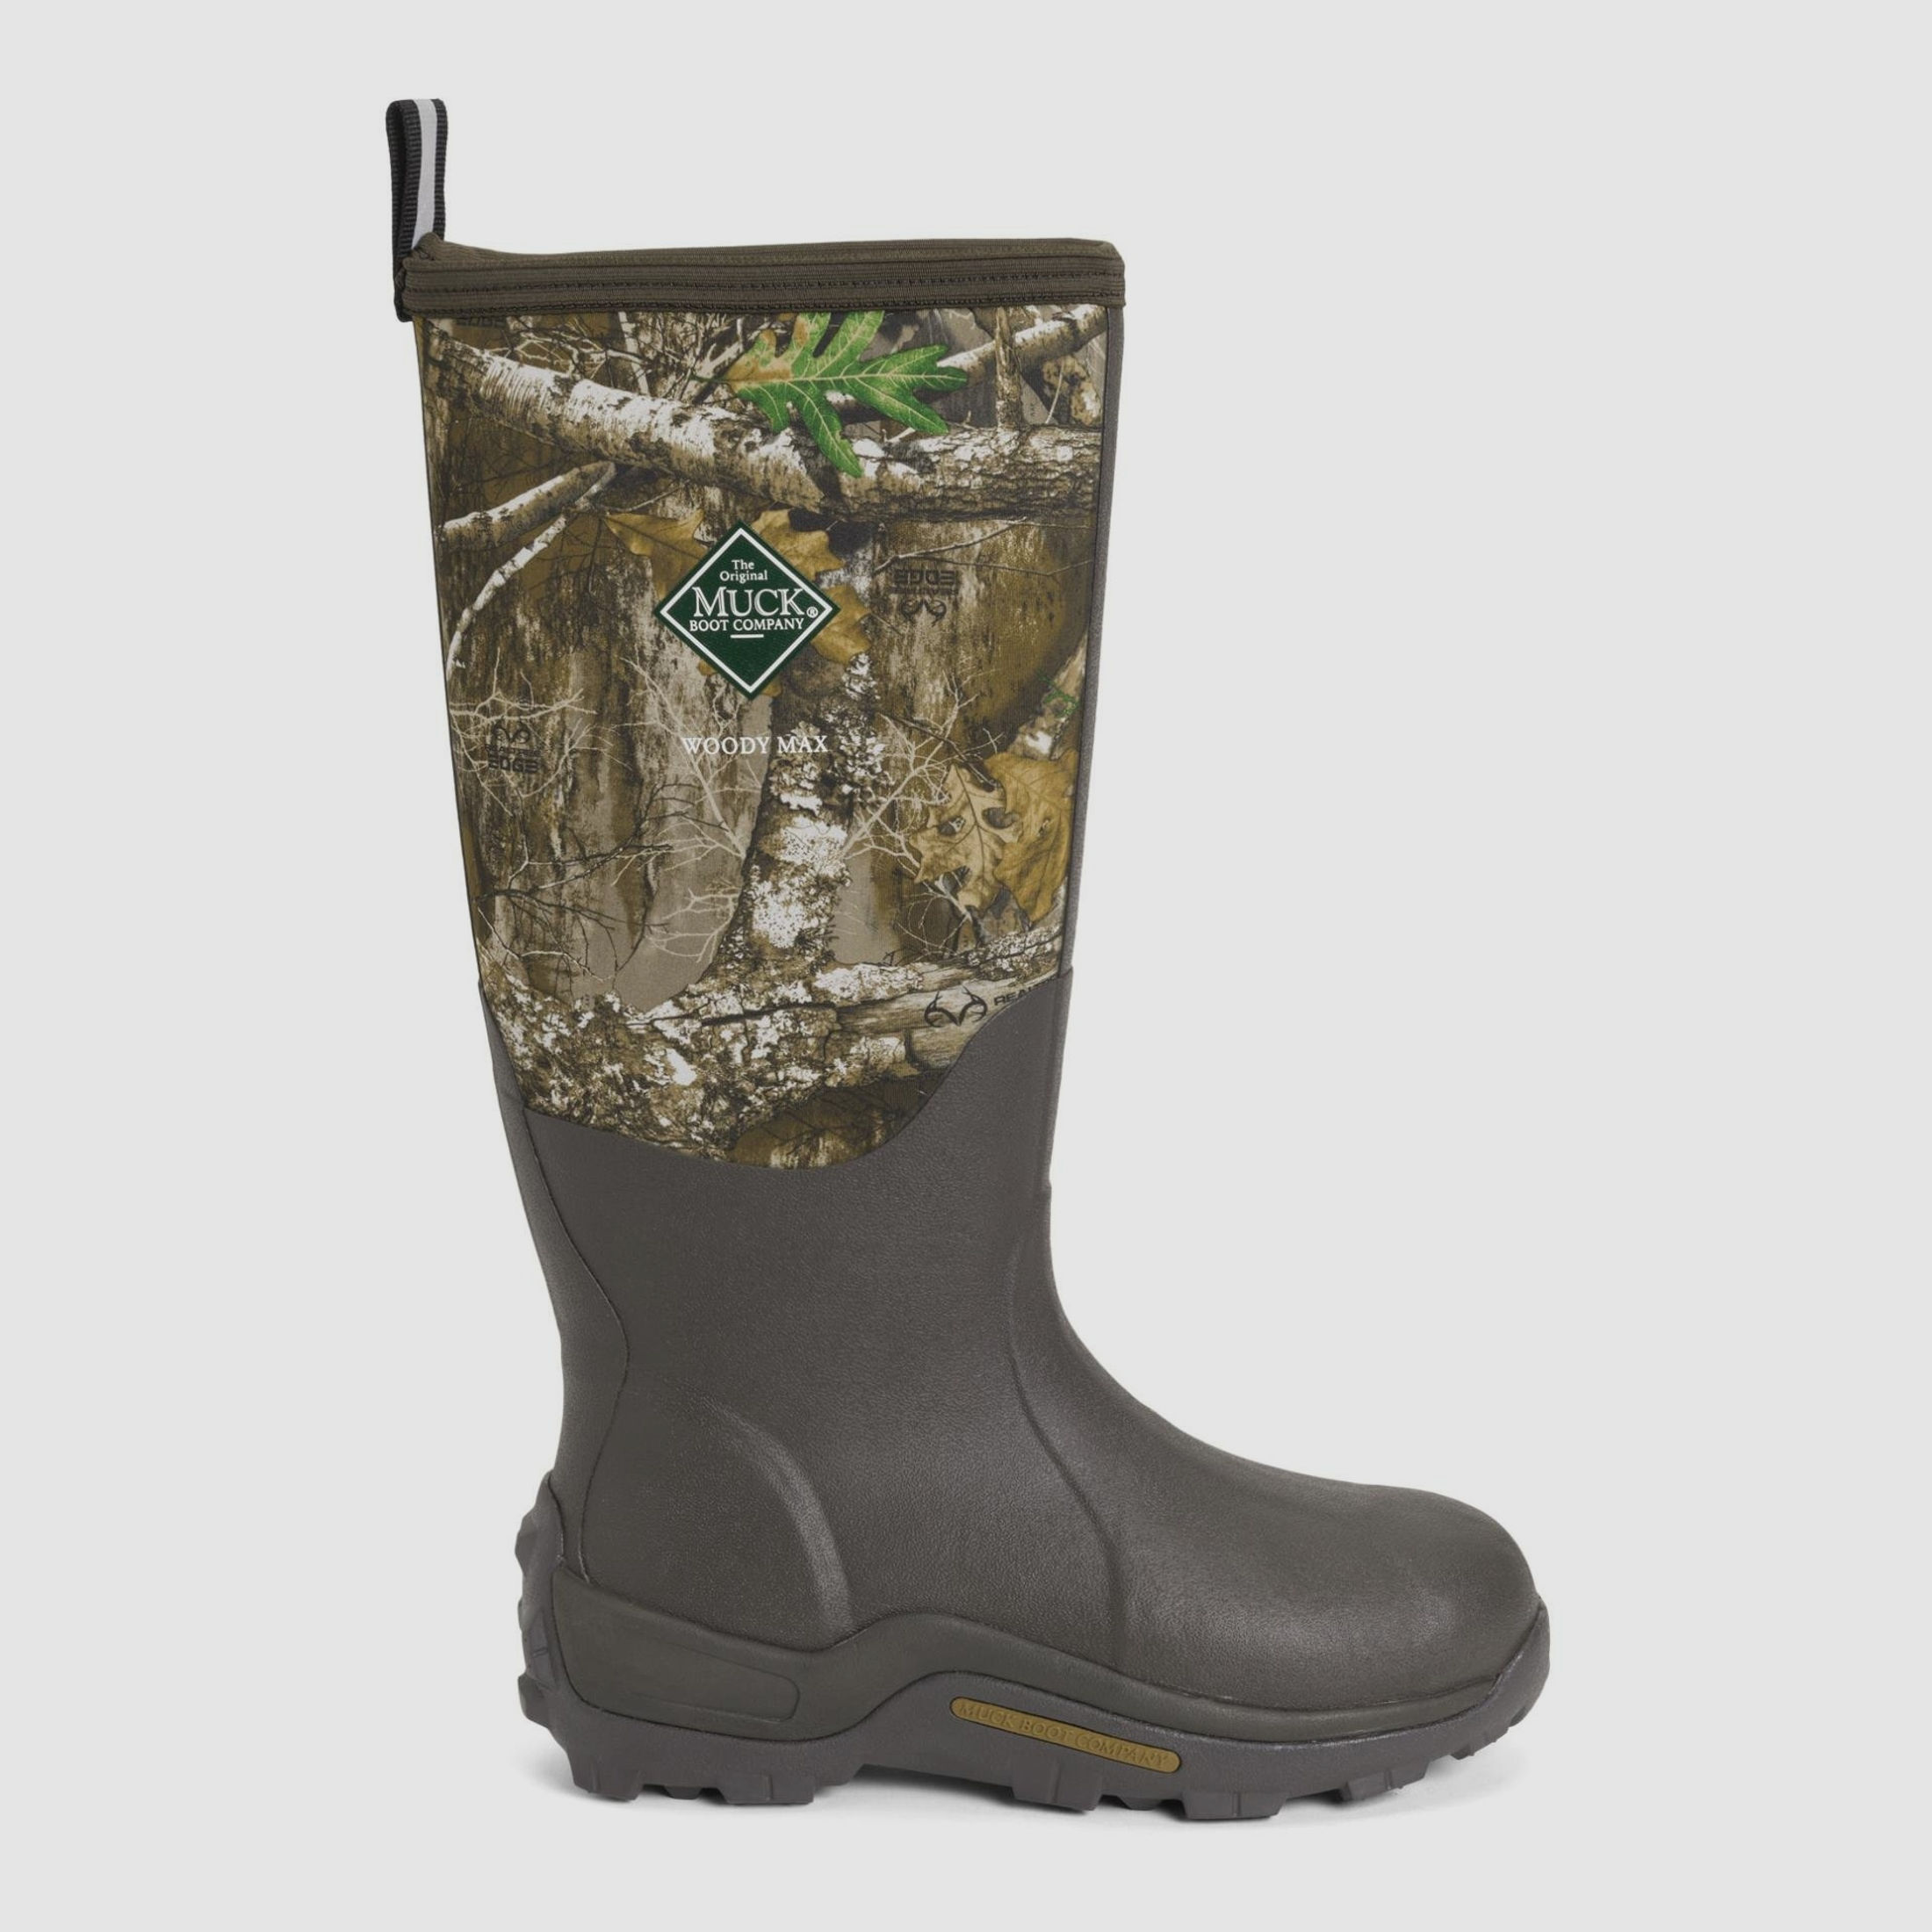 The Original Muck Boot Company Gummistiefel Herren Woody Max - camouflage  47